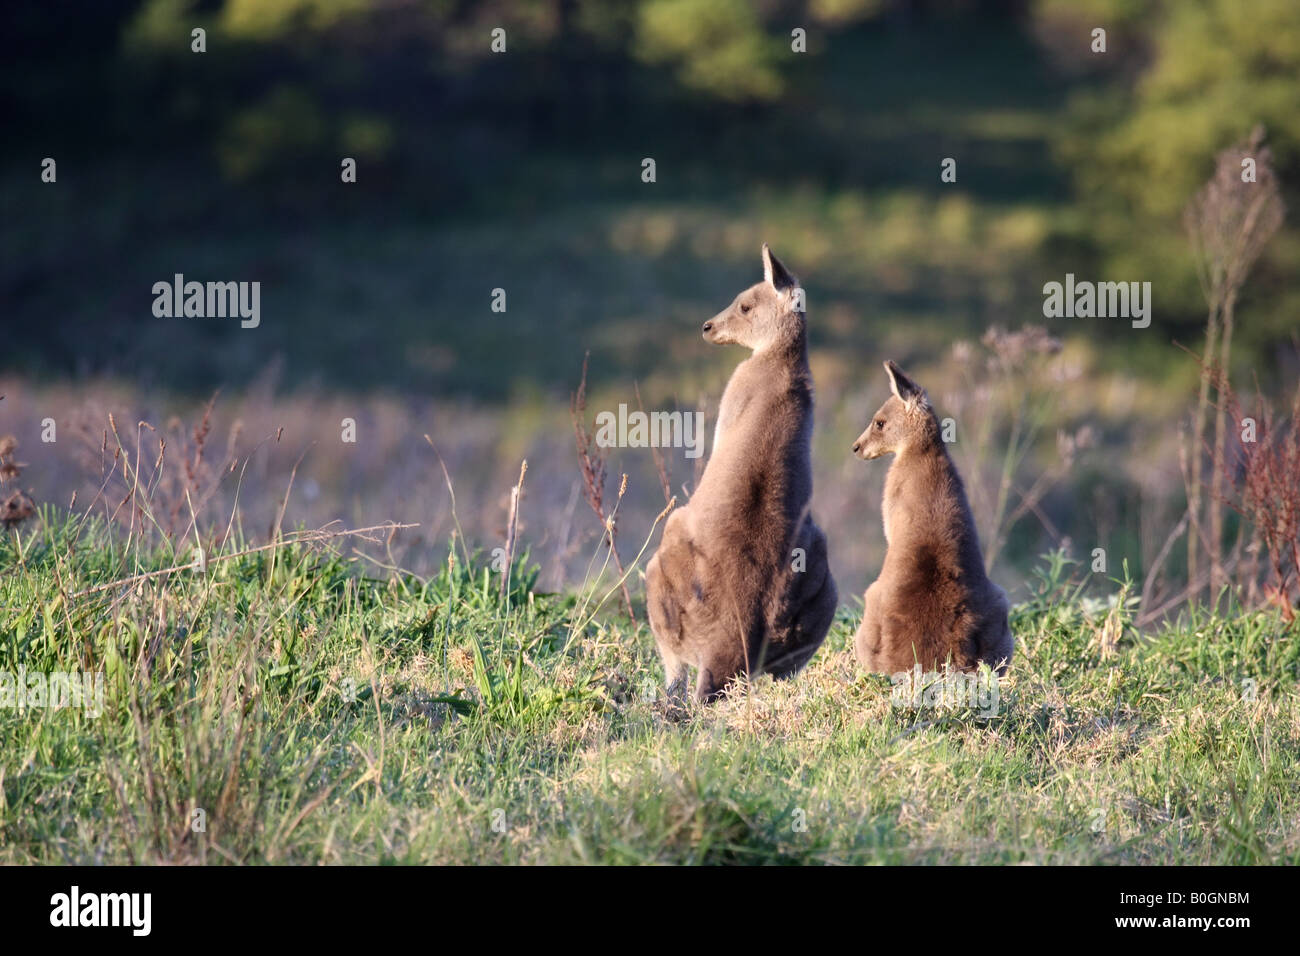 Eastern grey kangaroo, macropus giganteus, adult and joey standing together Stock Photo